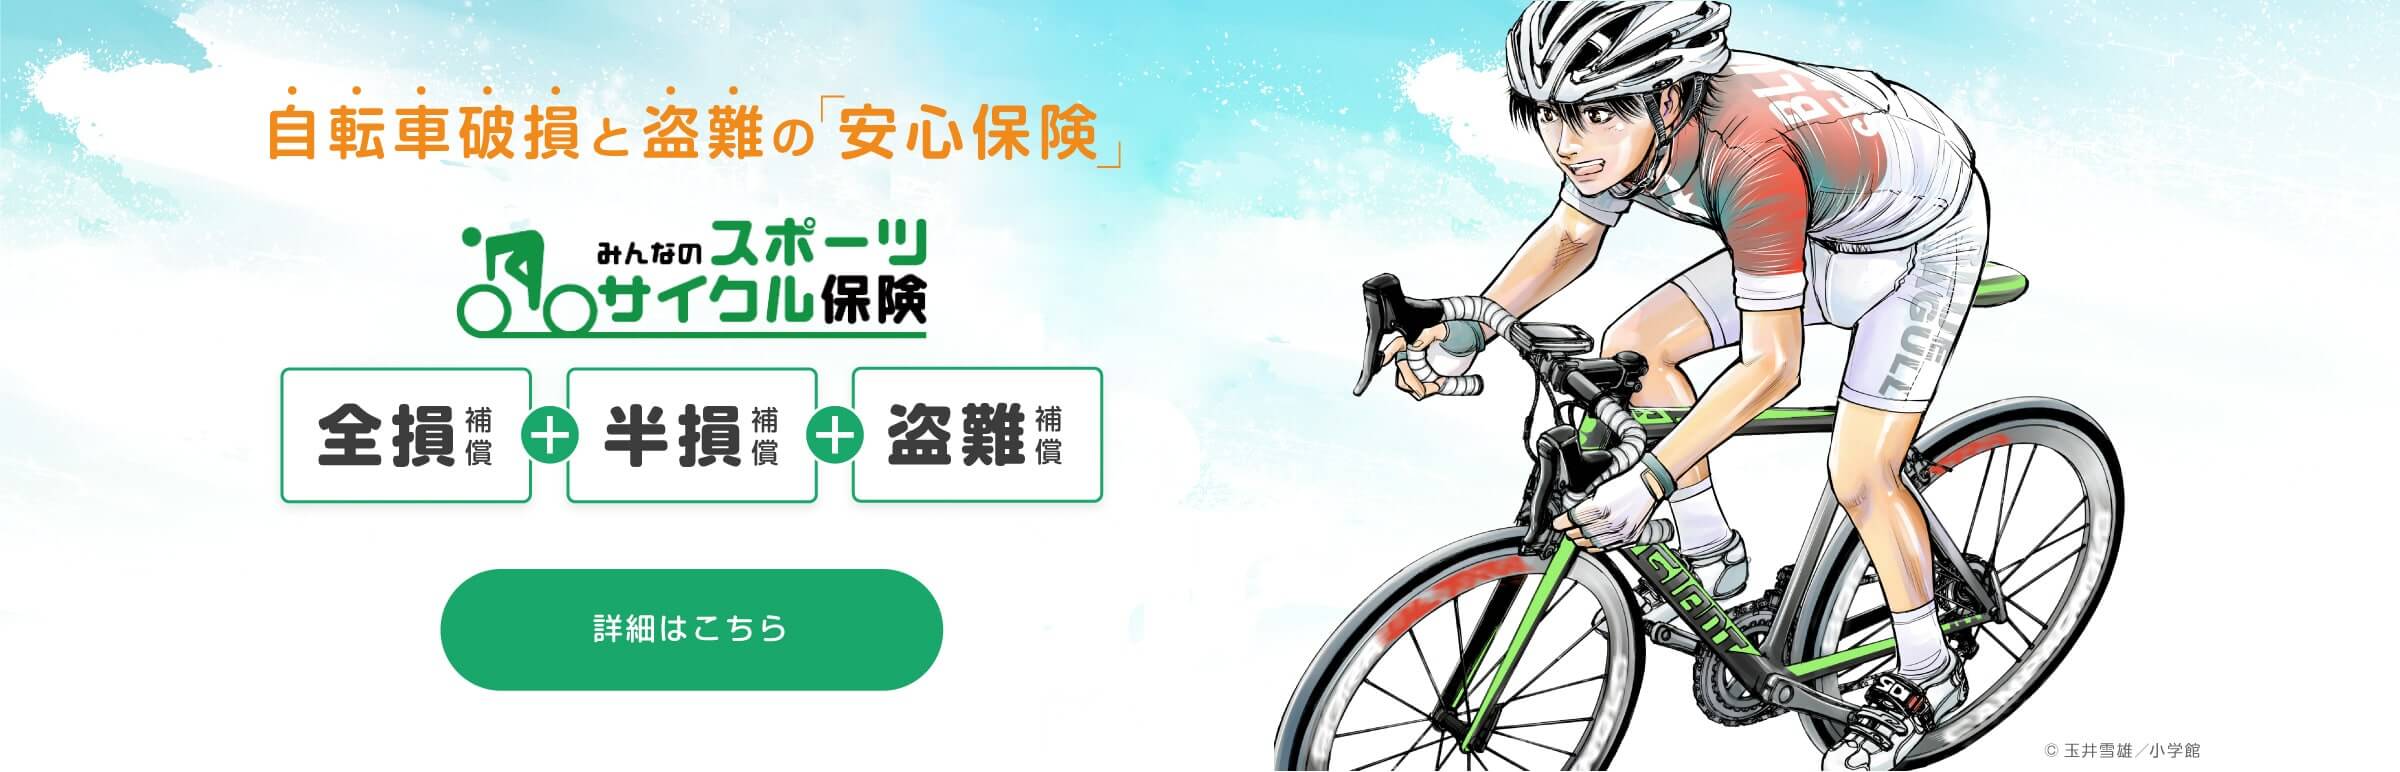 賃貸住宅保険 バイク保険 自転車保険 Sbi日本少額短期保険 株式会社